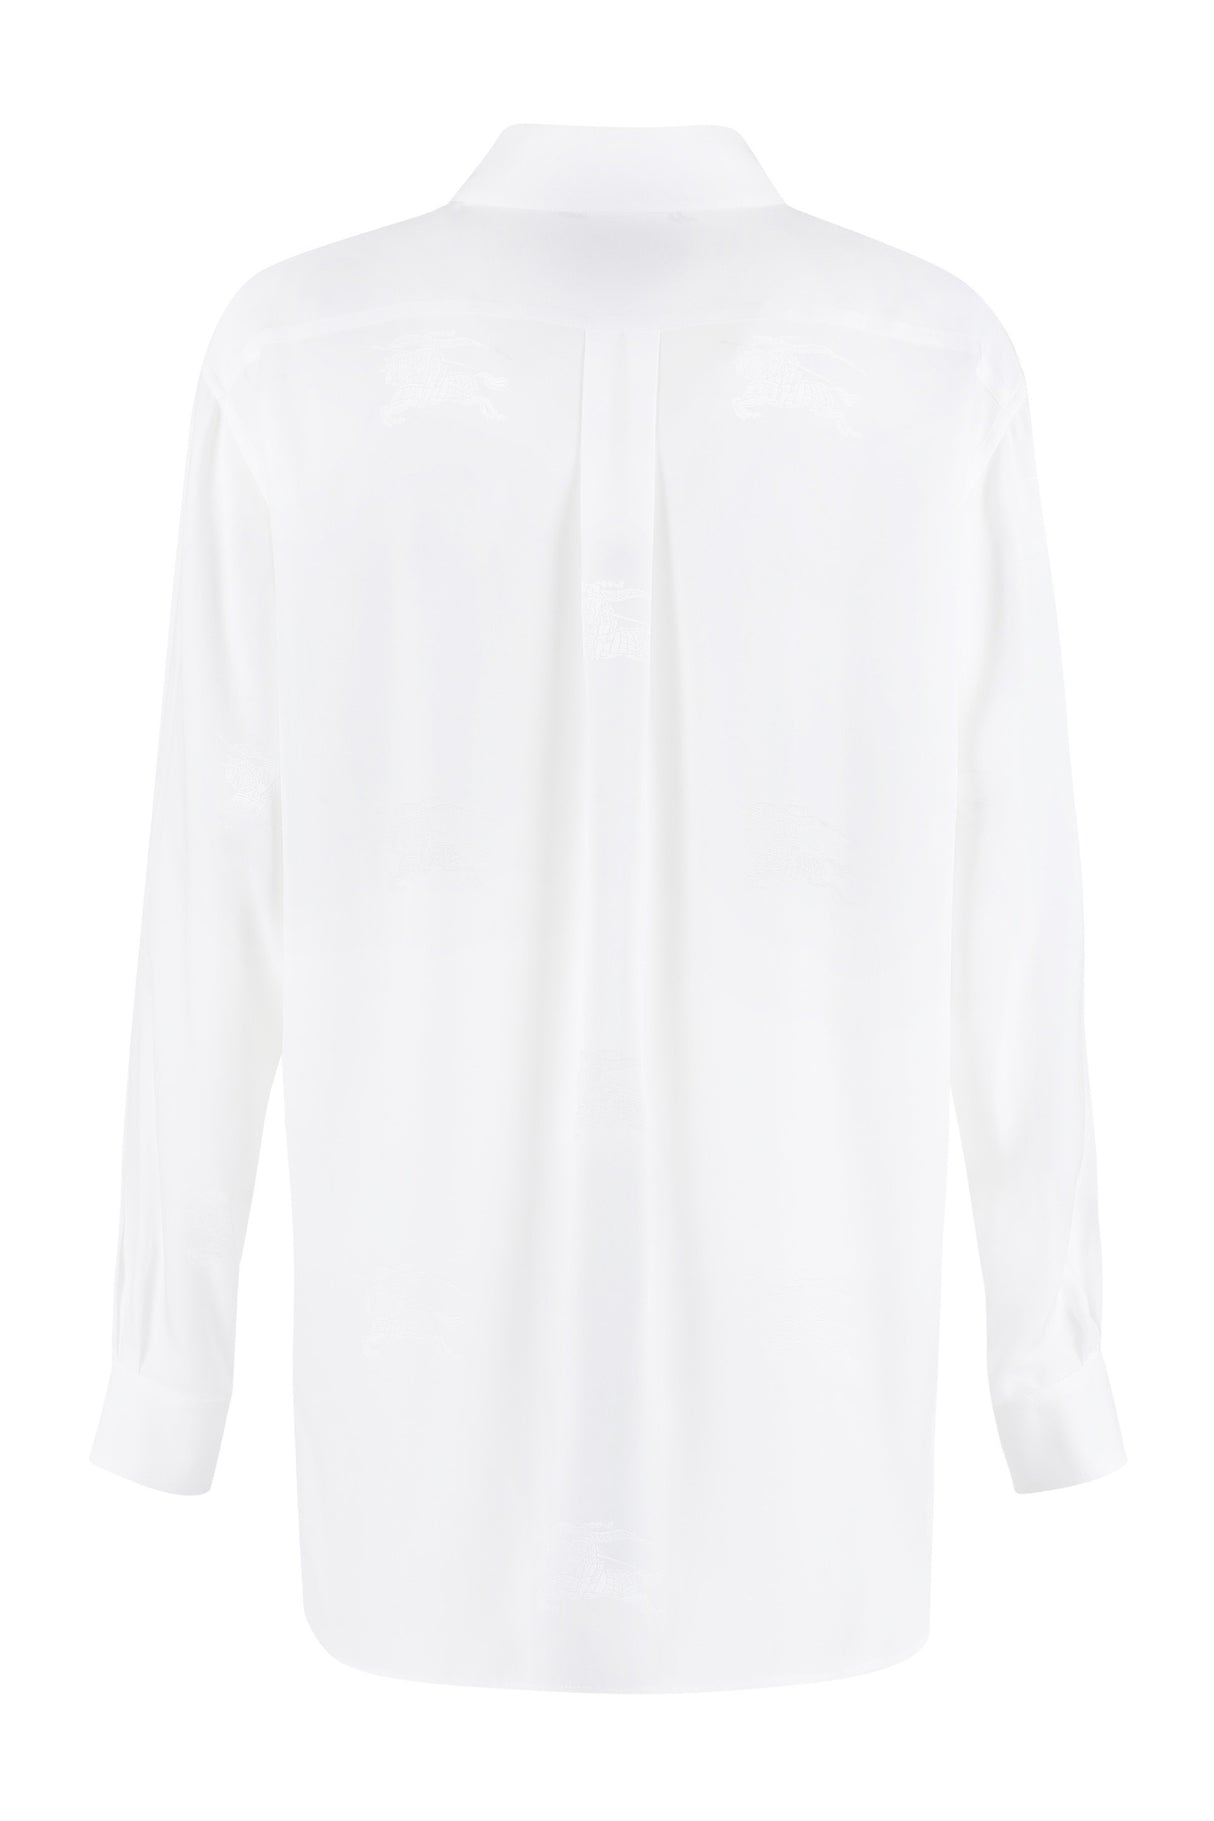 Áo silk trắng sang trọng với nút ngọc trai và phần cổ chữ V